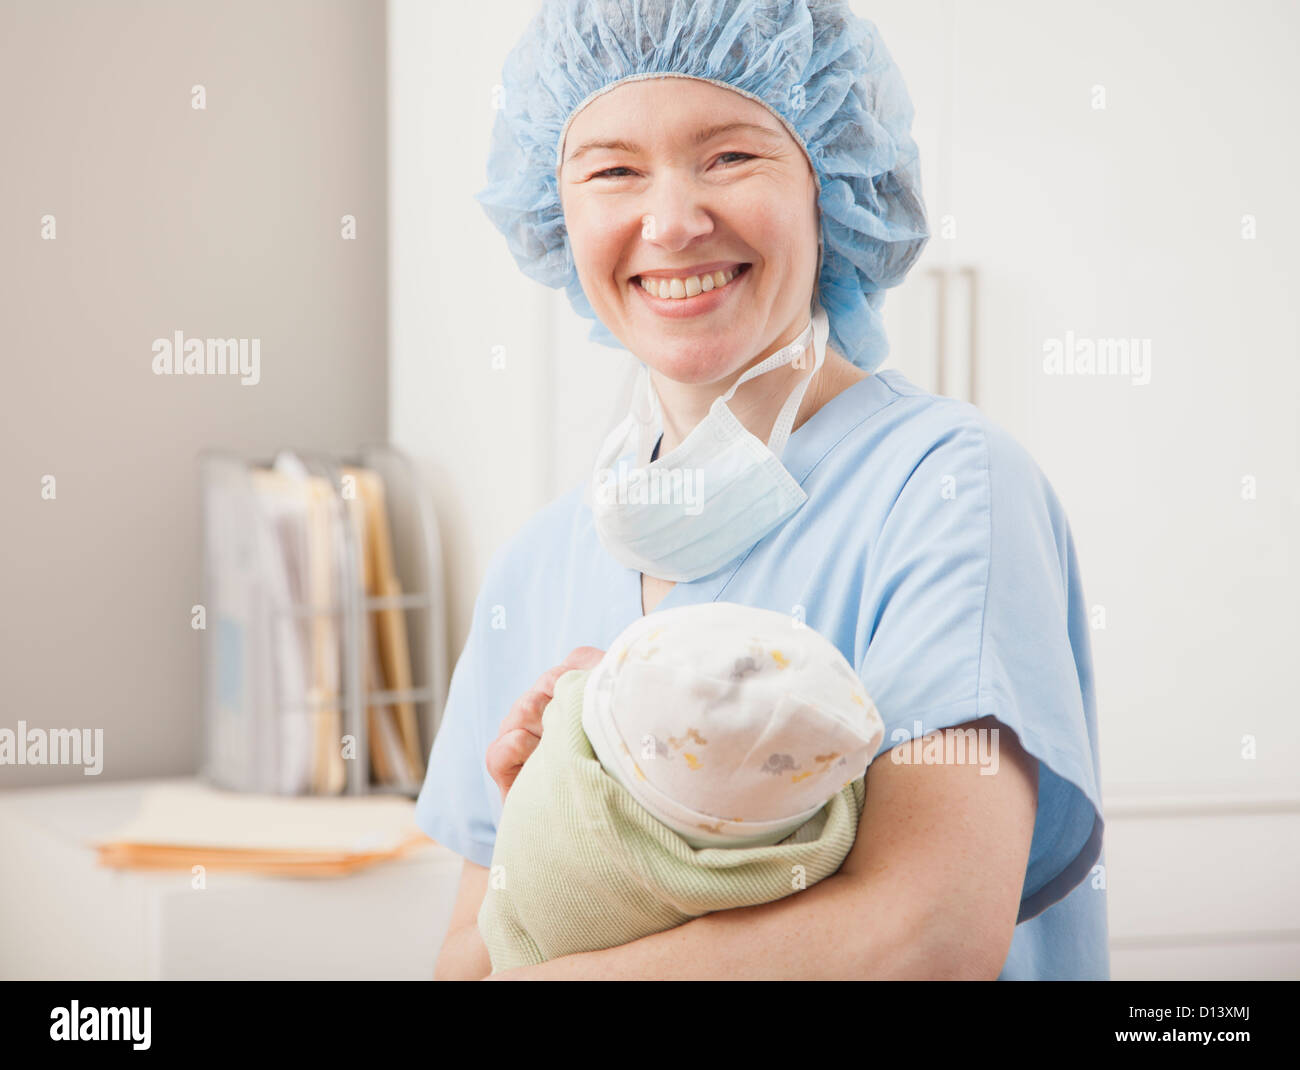 États-unis, Illinois, Metamora, Portrait of female nurse holding newborn baby Banque D'Images